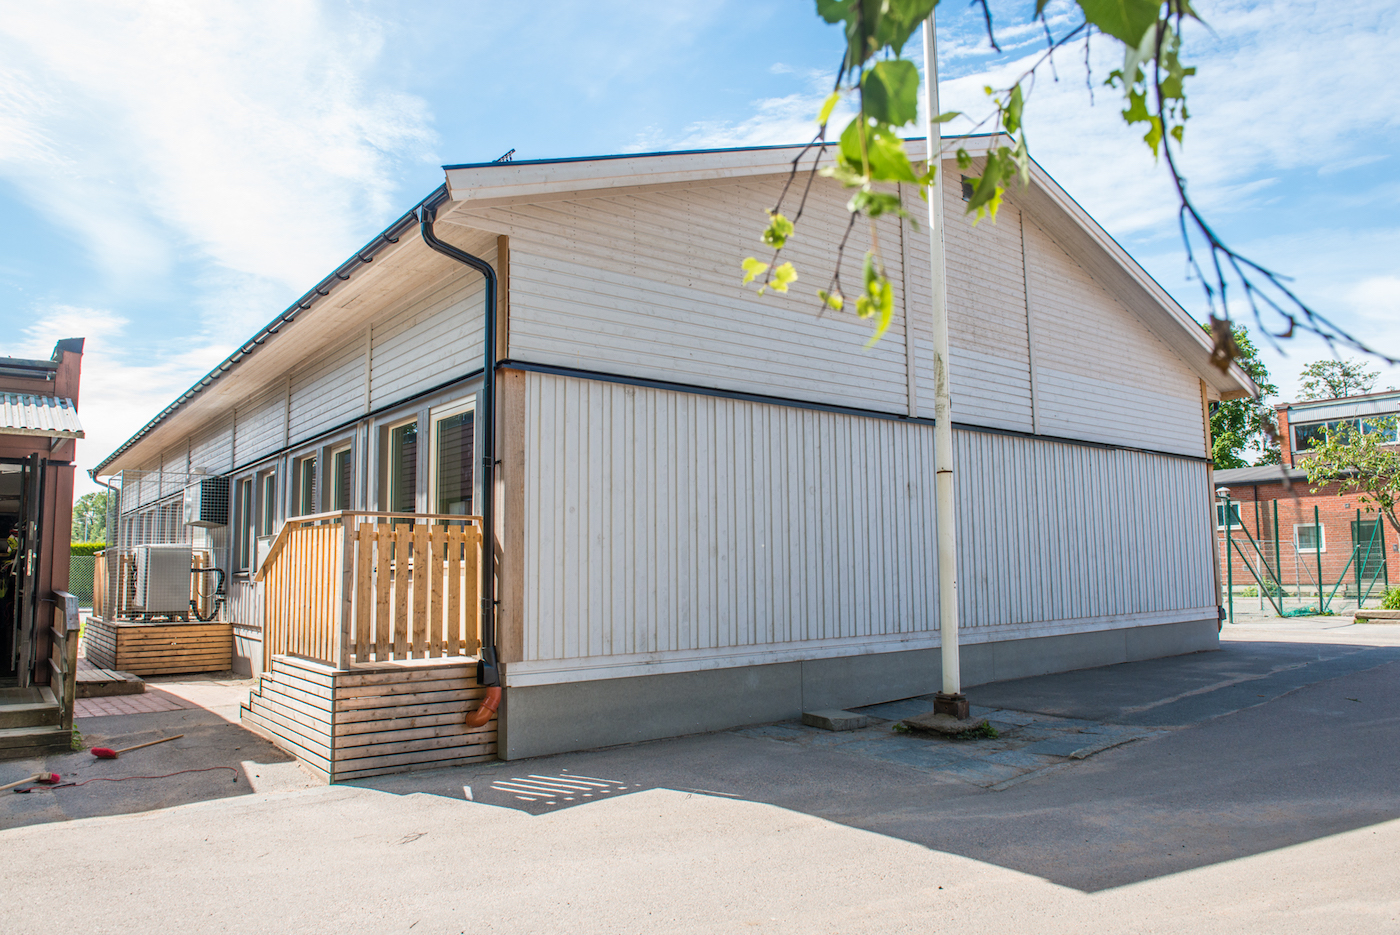 I en trevlig liten skolbyggnad med sadeltak har PCS Modulsystem skapat två extra klassrum på Aspenässkolan i Lerums kommun med de tysta modulerna PCS Comfort.